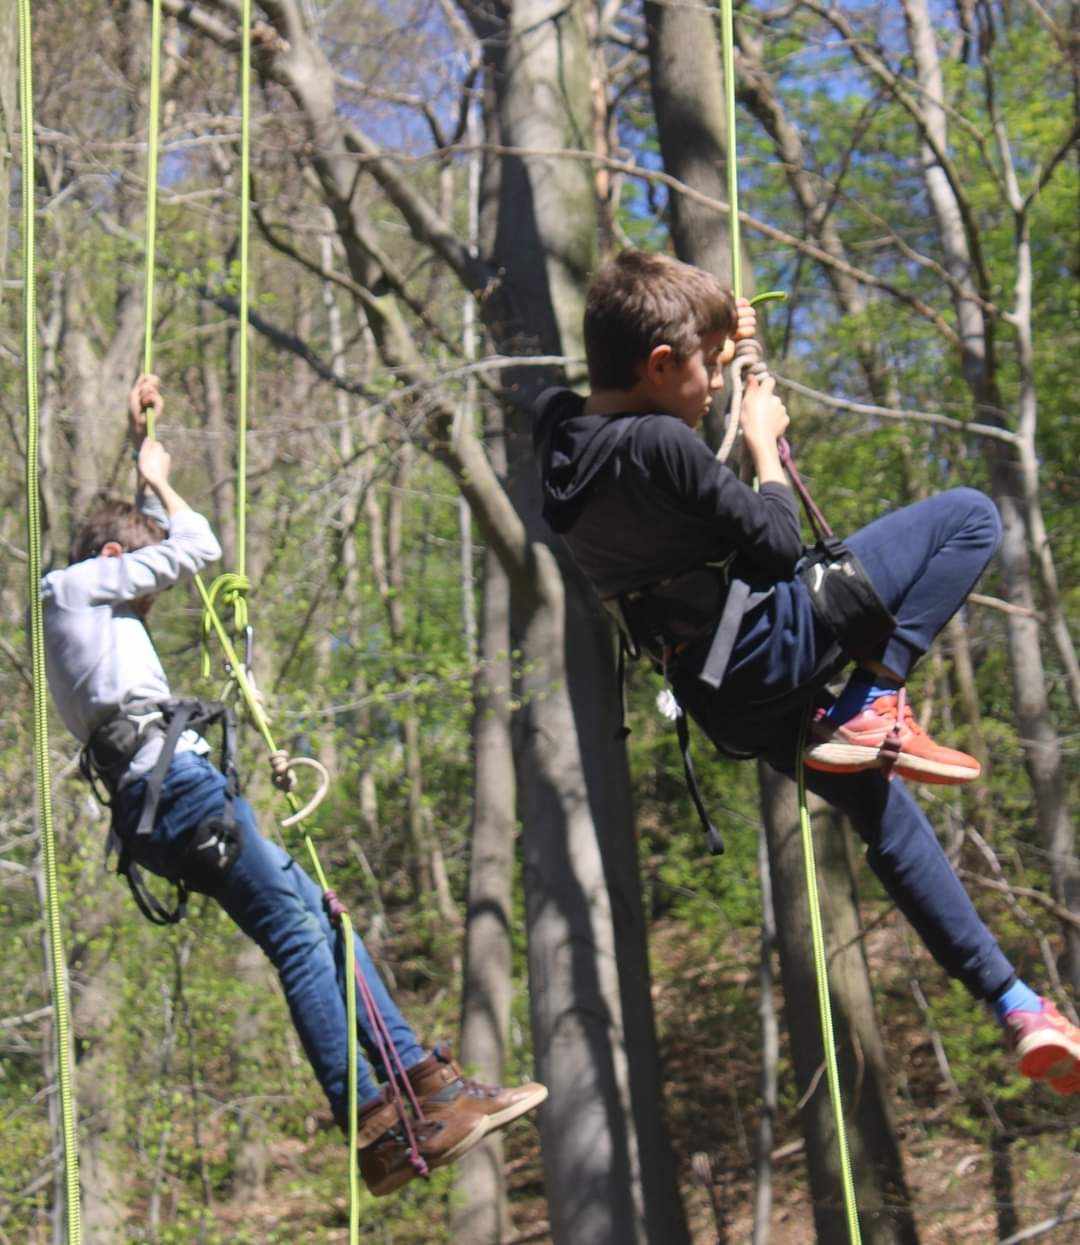 2 enfants faisant de la grimpe dans les arbres à l'aide de cordes